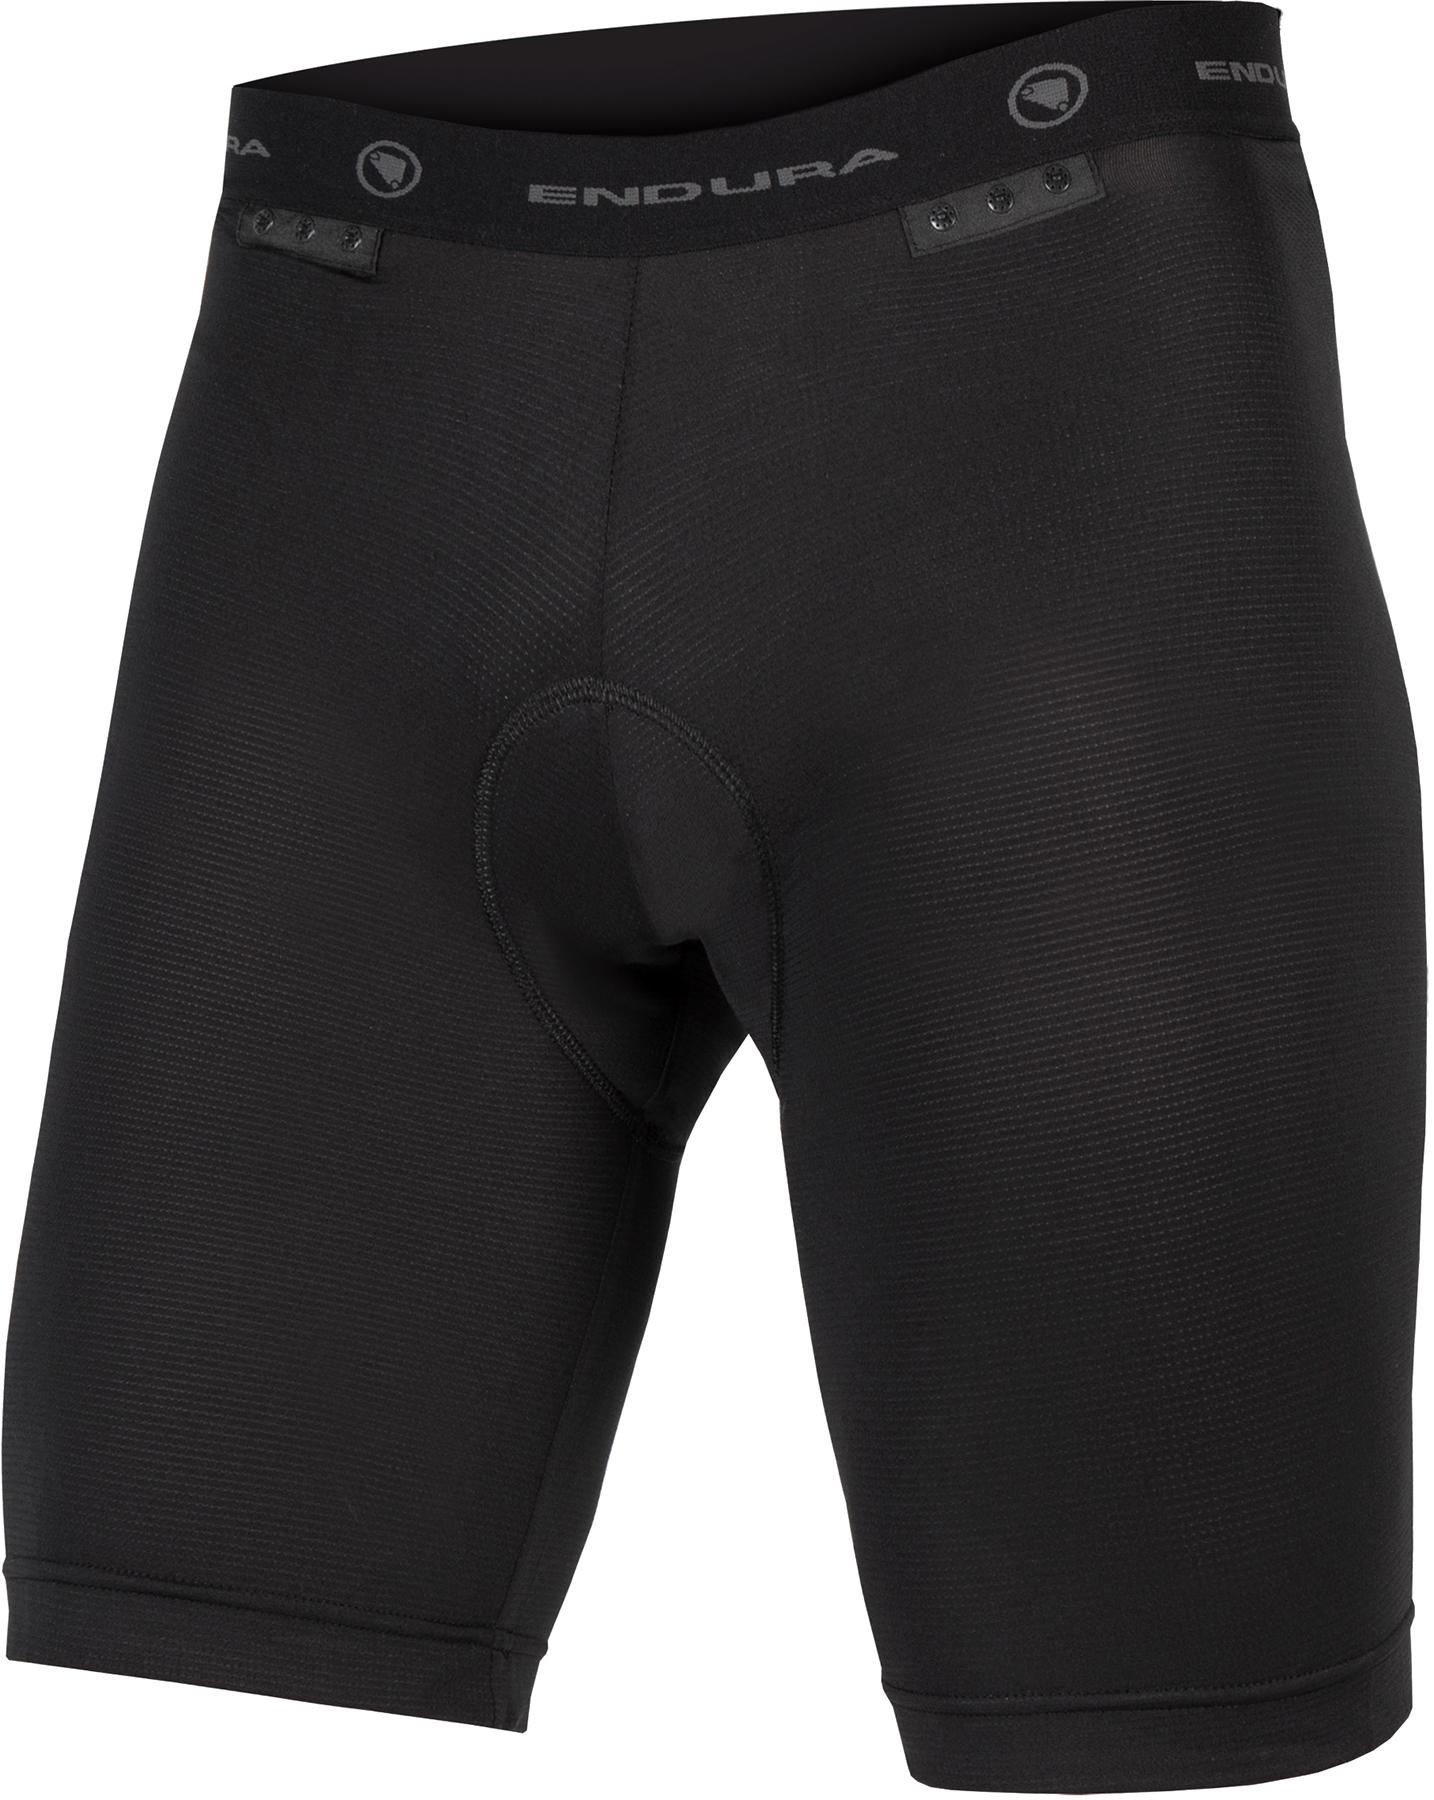 Endura Padded Clickfast Liner Shorts - Black